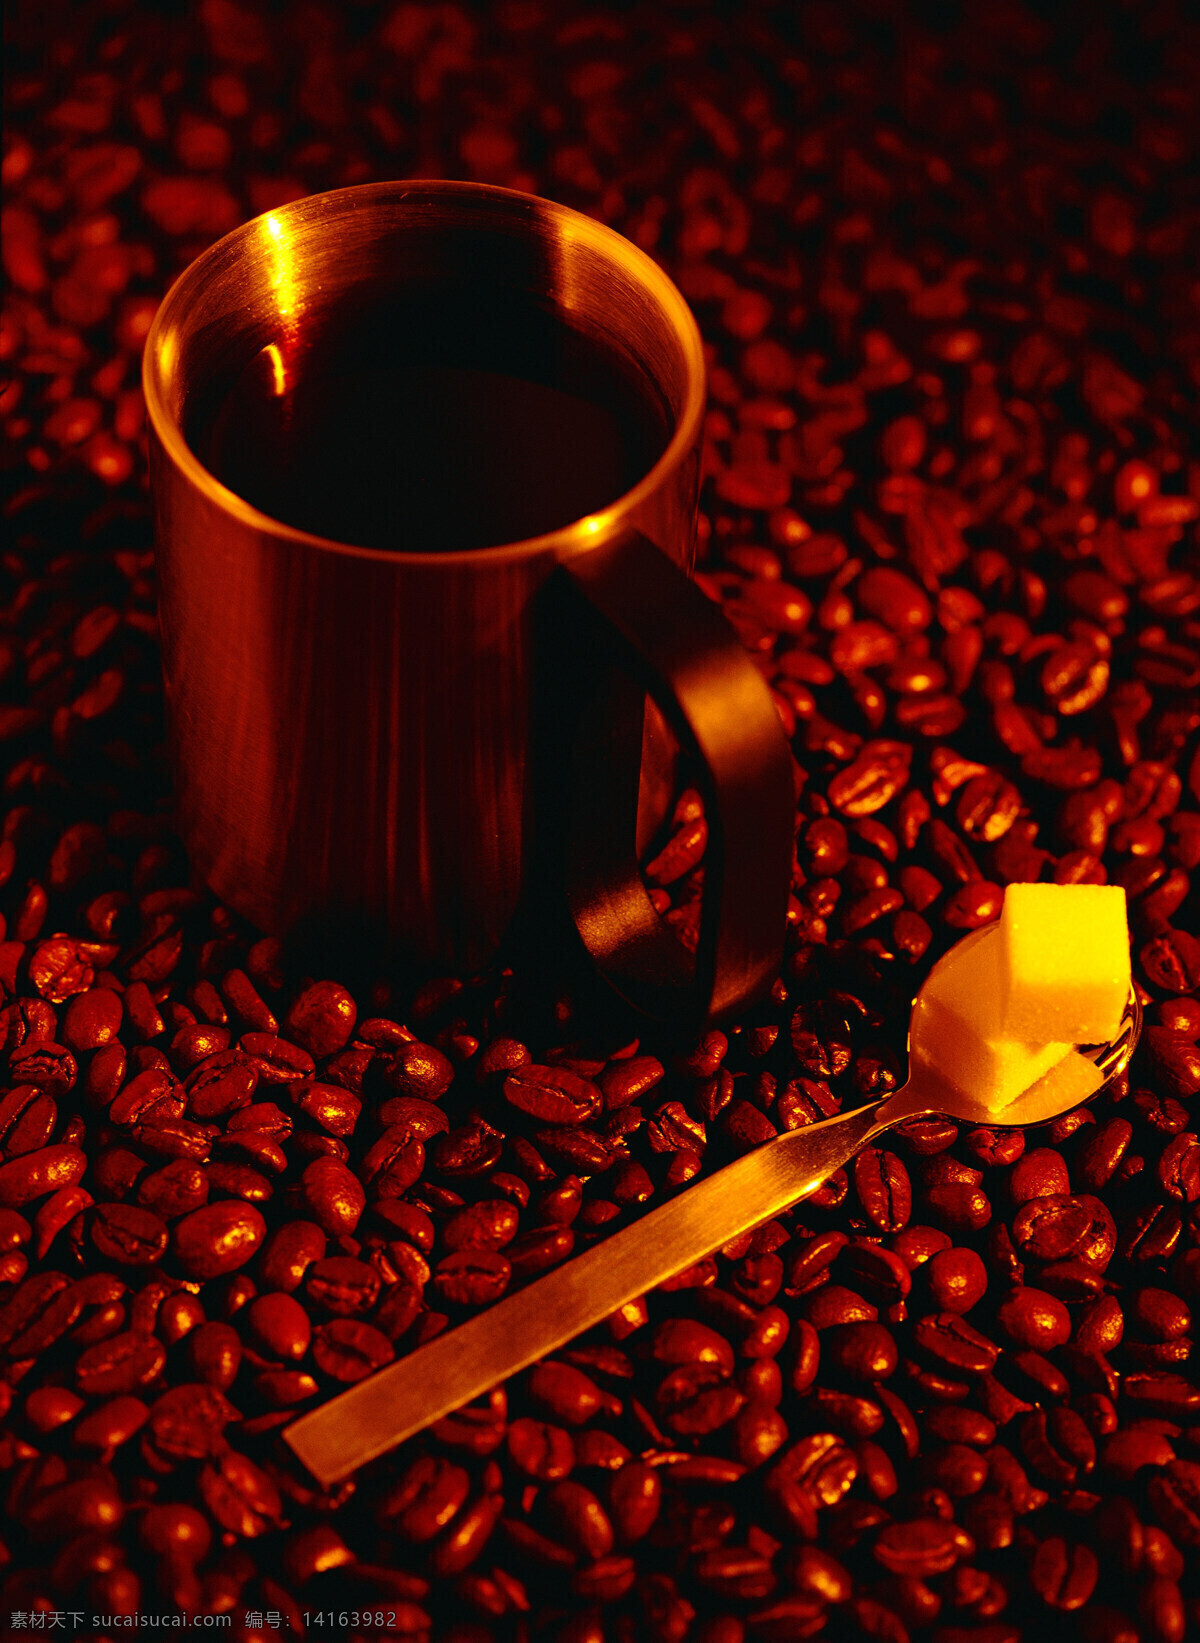 咖啡 咖啡豆 特写 咖啡杯 香浓 杯子 盅 勺子 温馨 休闲 品味 享受生活 高档 摄影图 高清图片 咖啡图片 餐饮美食